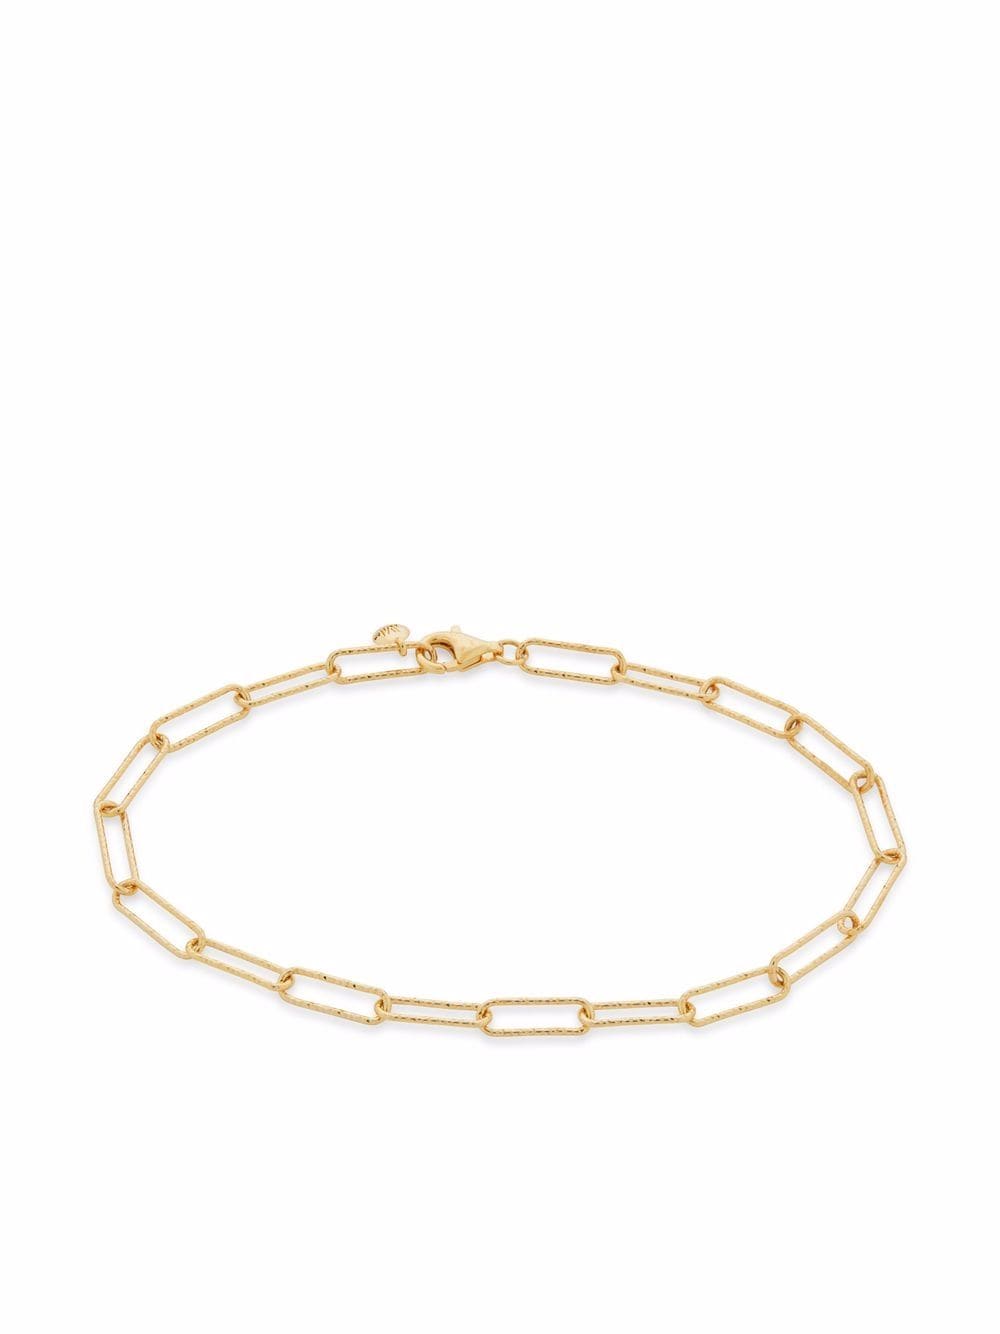 monica vinader bracelet alta en chaîne texturée - or